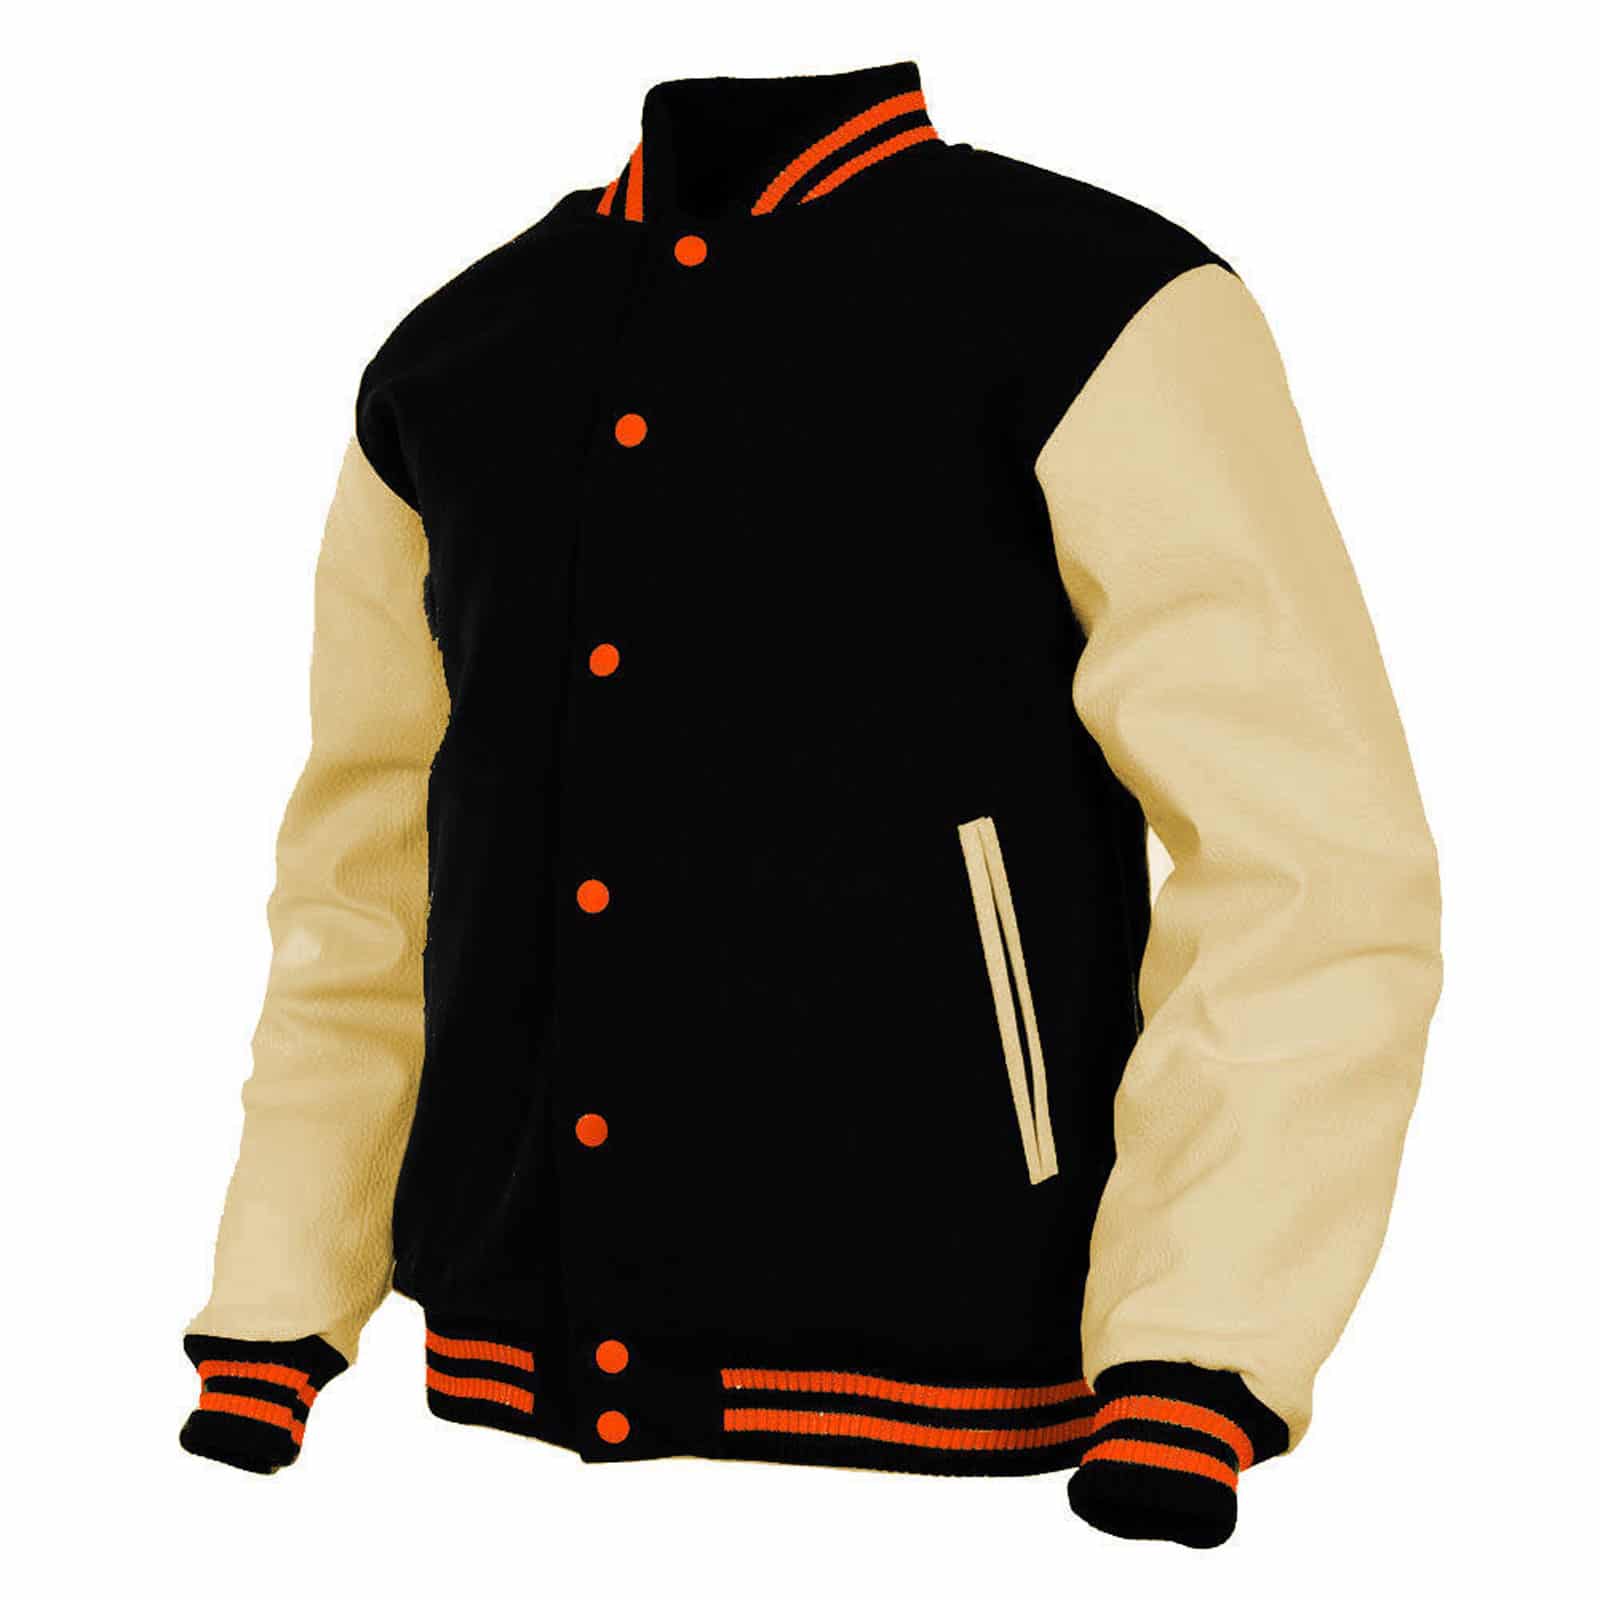 Black Wool Varsity Jacket for Men with Sleek Leather Sleeves